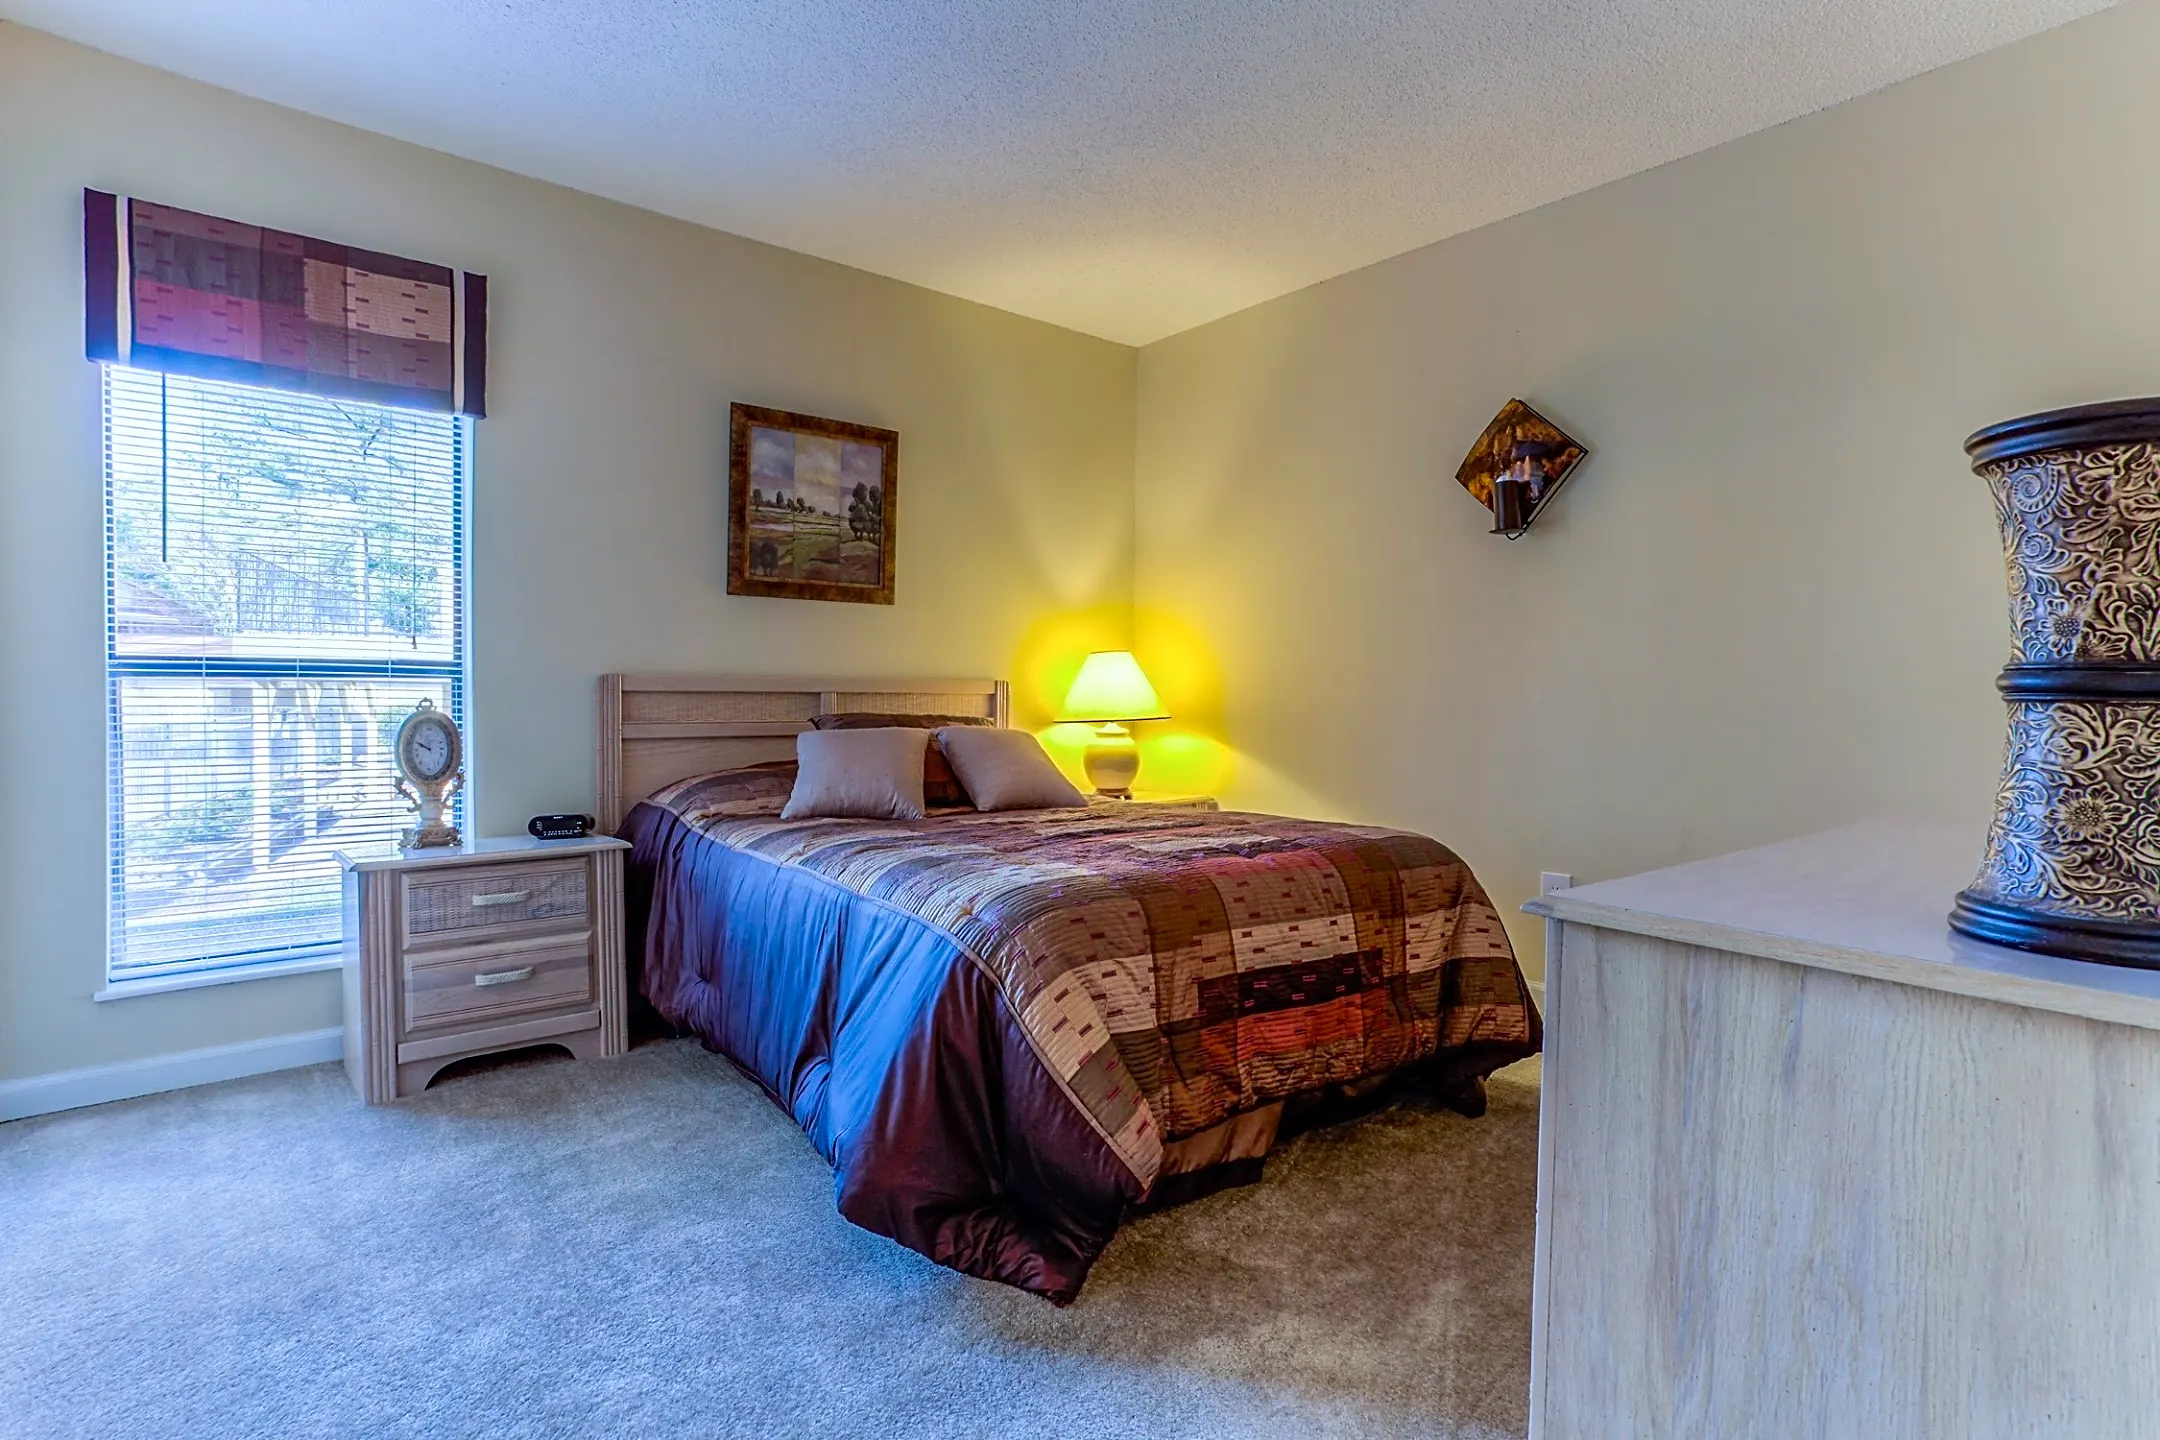 Bedroom - Enclave at North Point - Winston-Salem, NC